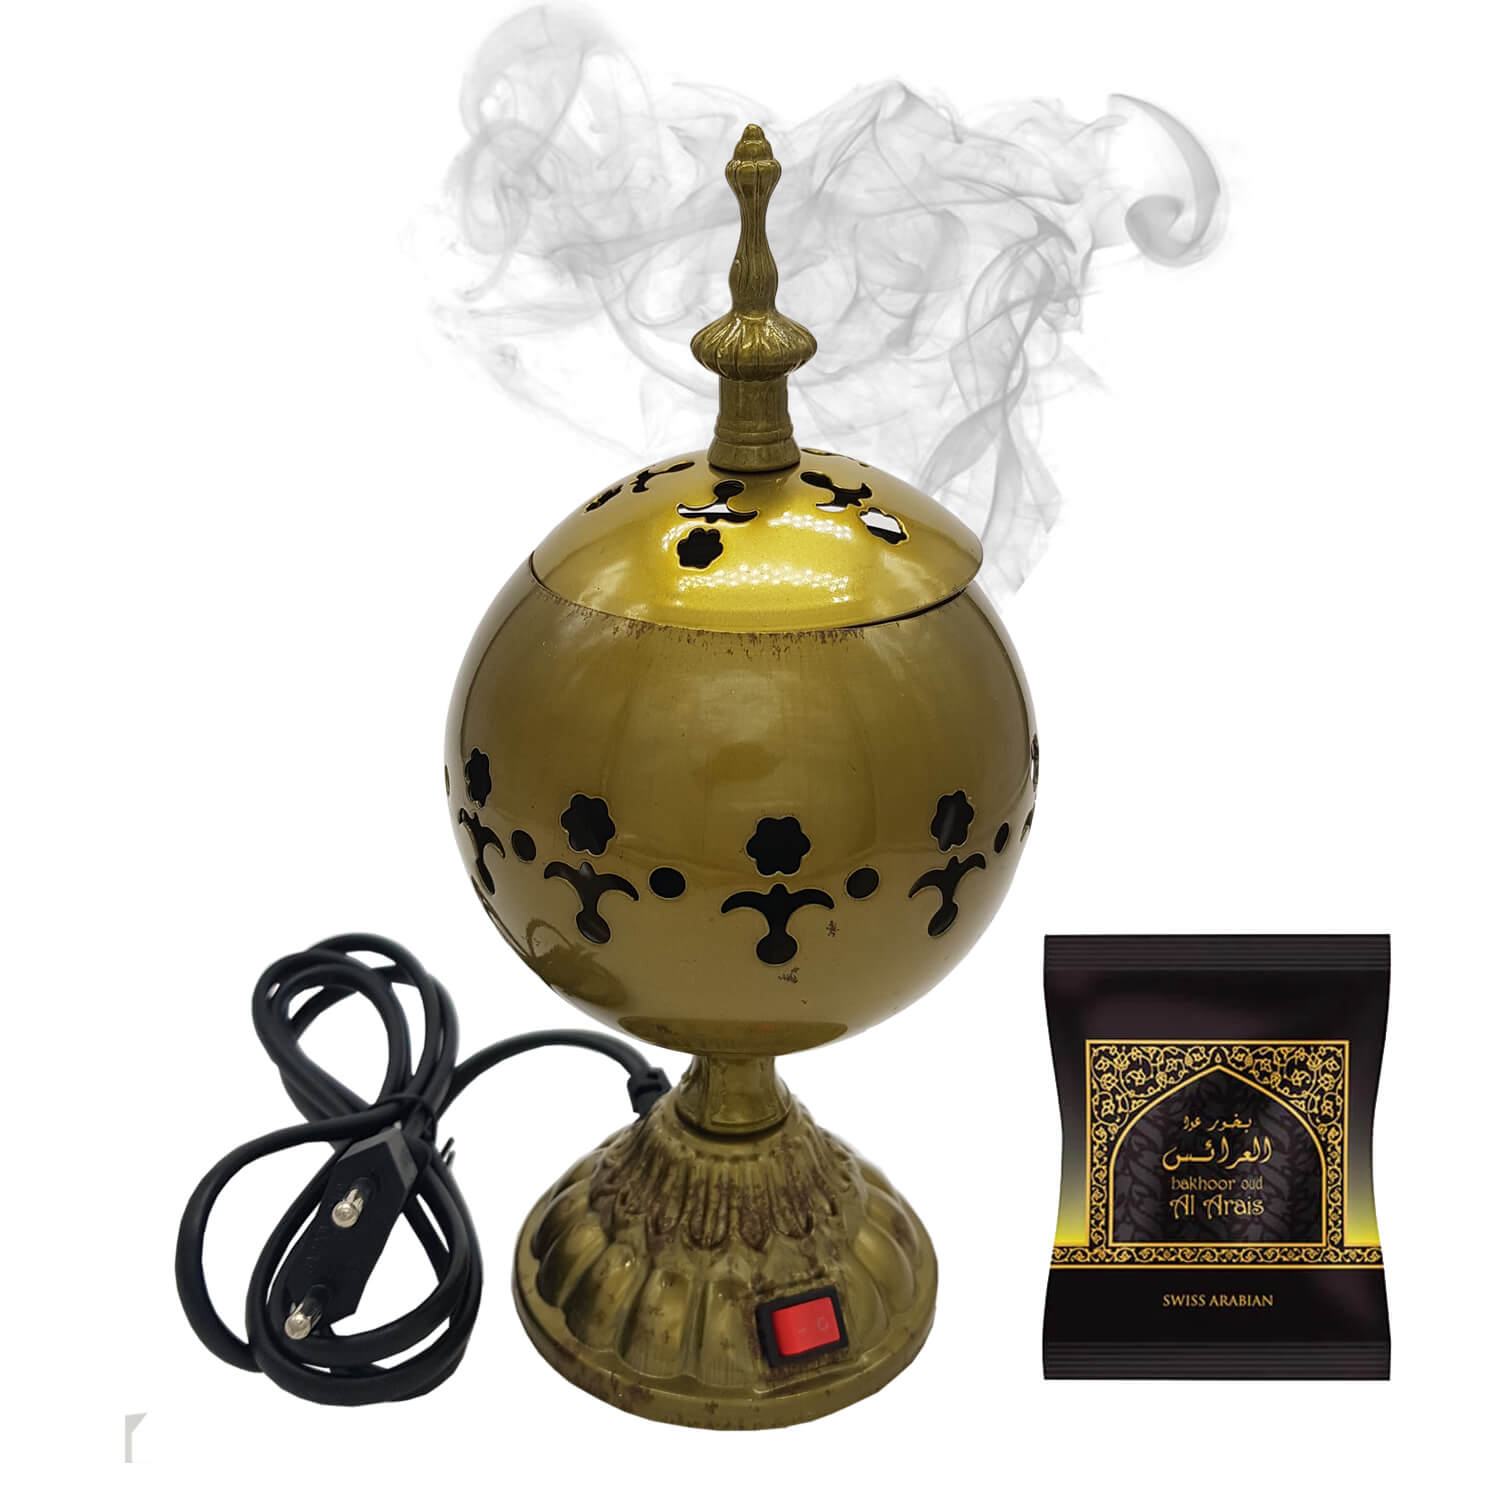 Exclusive Electrical Bakhoor Burner & 40g Fragrance Paste - Green